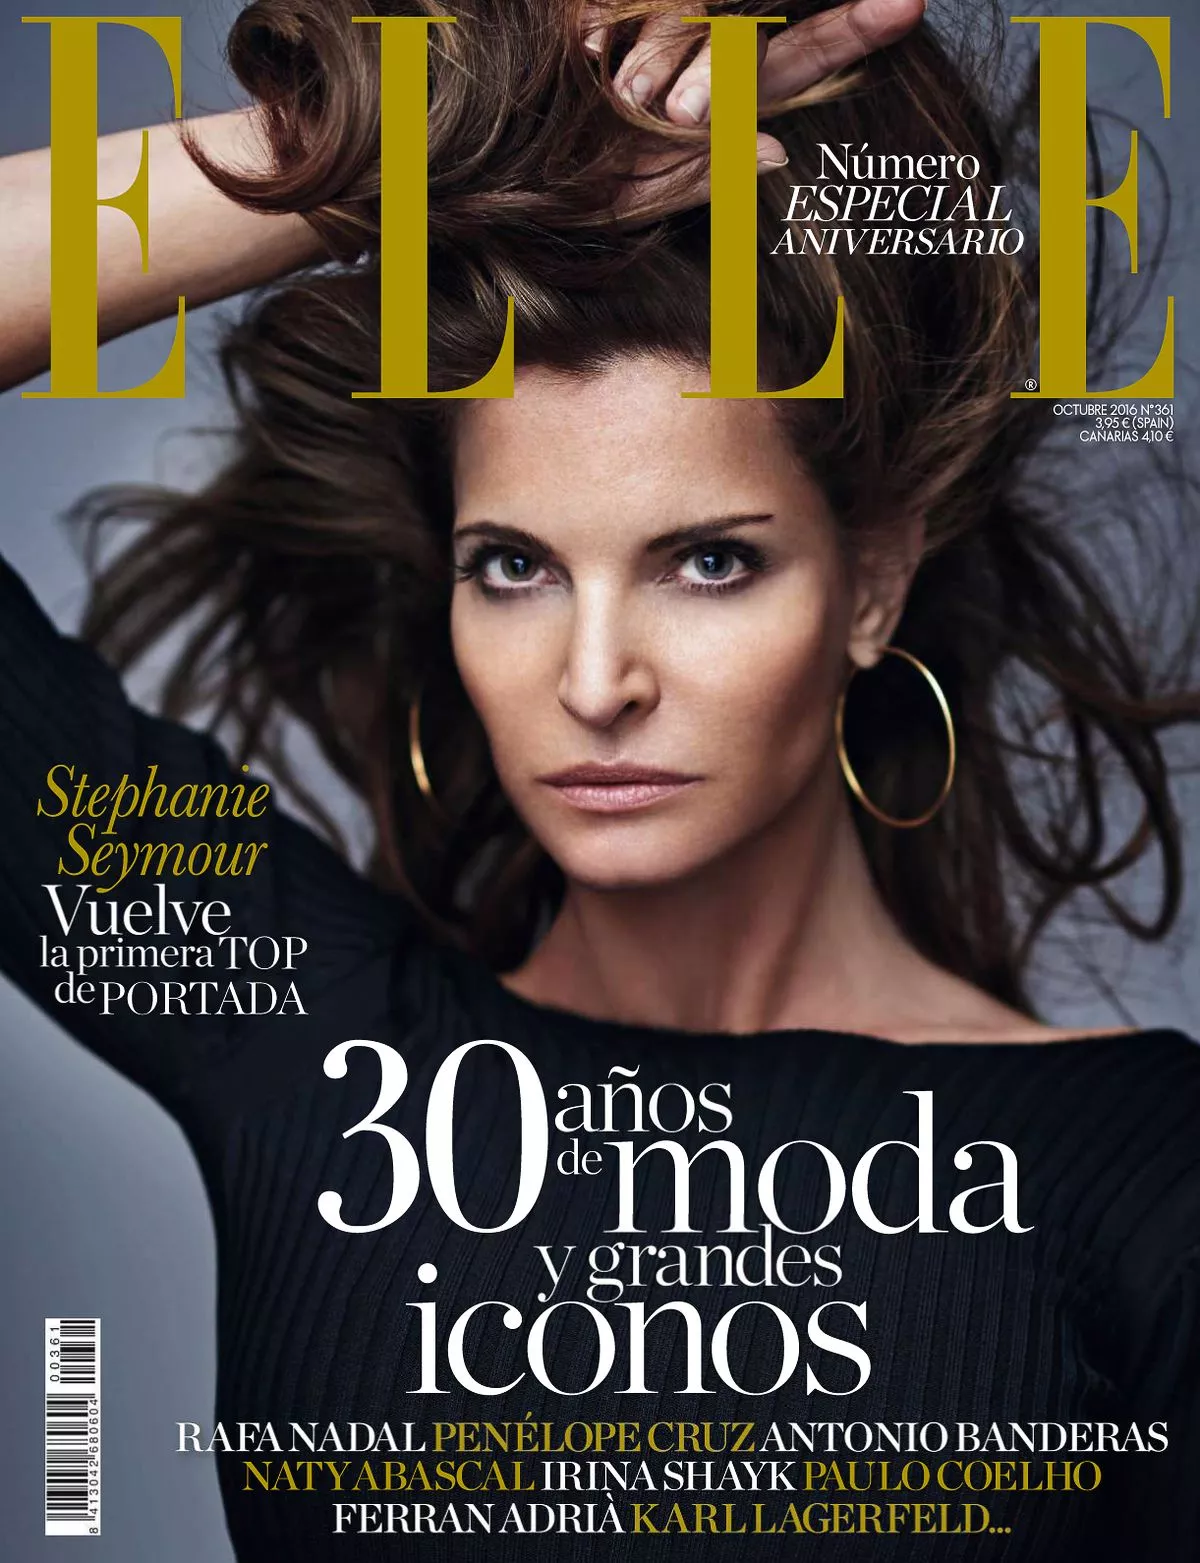 Стефани Сеймур на обложке журнала ELLE Spain